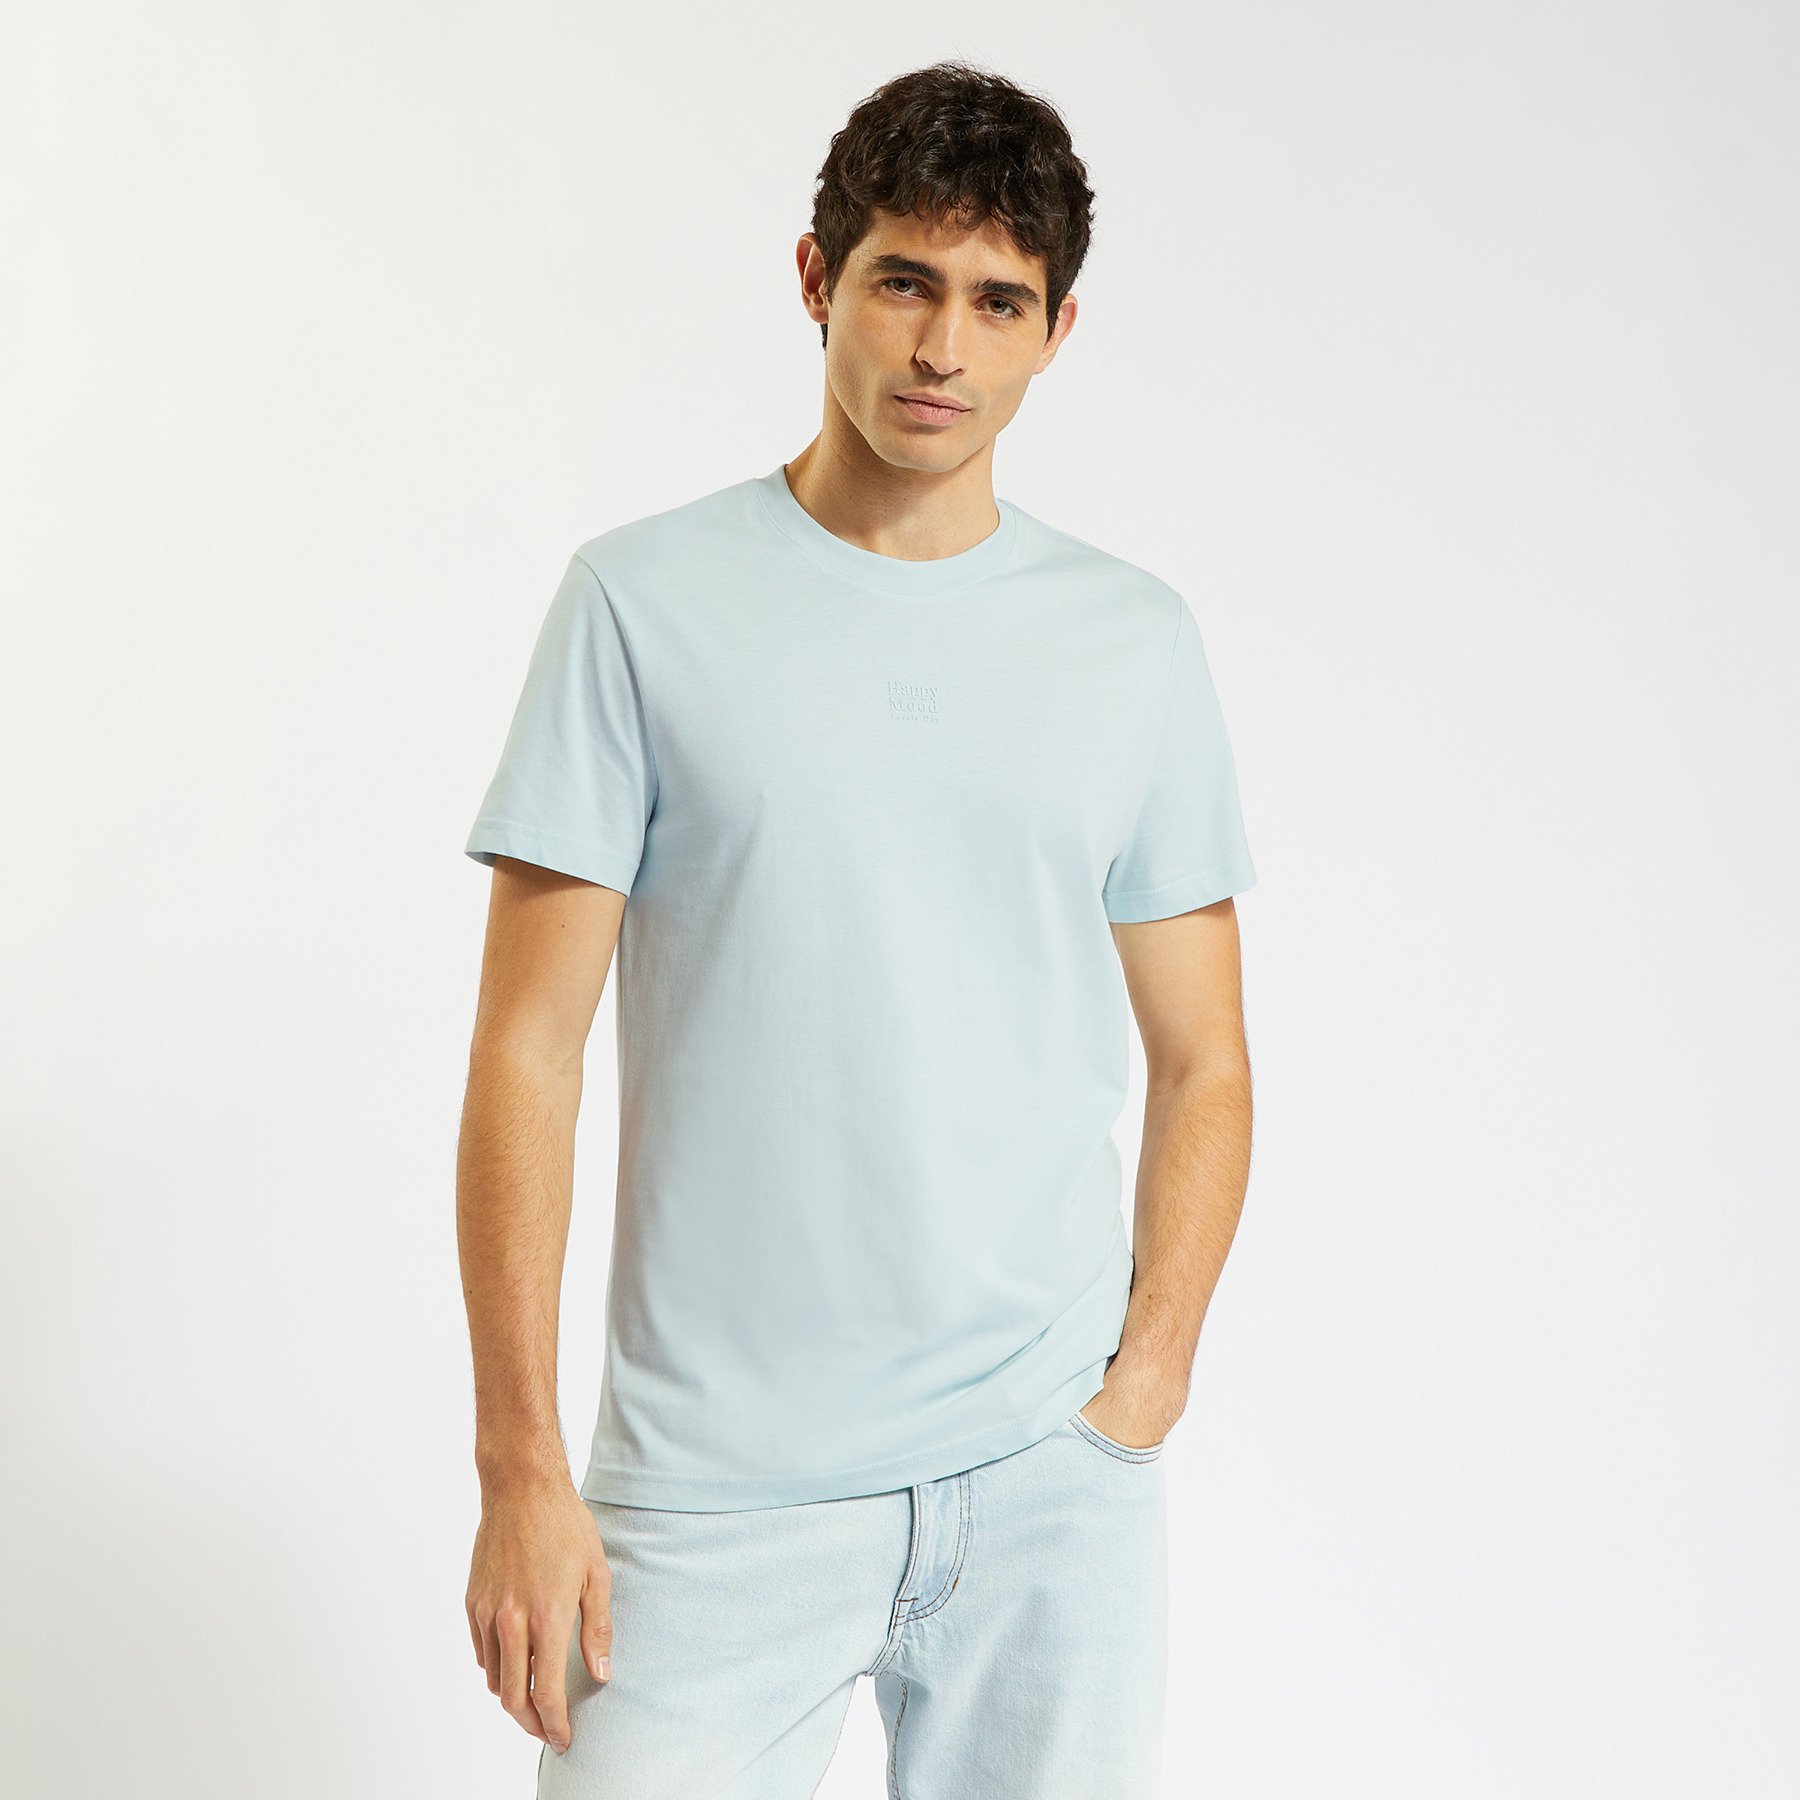 Tee shirt jersey imprimé  placé Bleu clair S 100% Coton Homme Jules